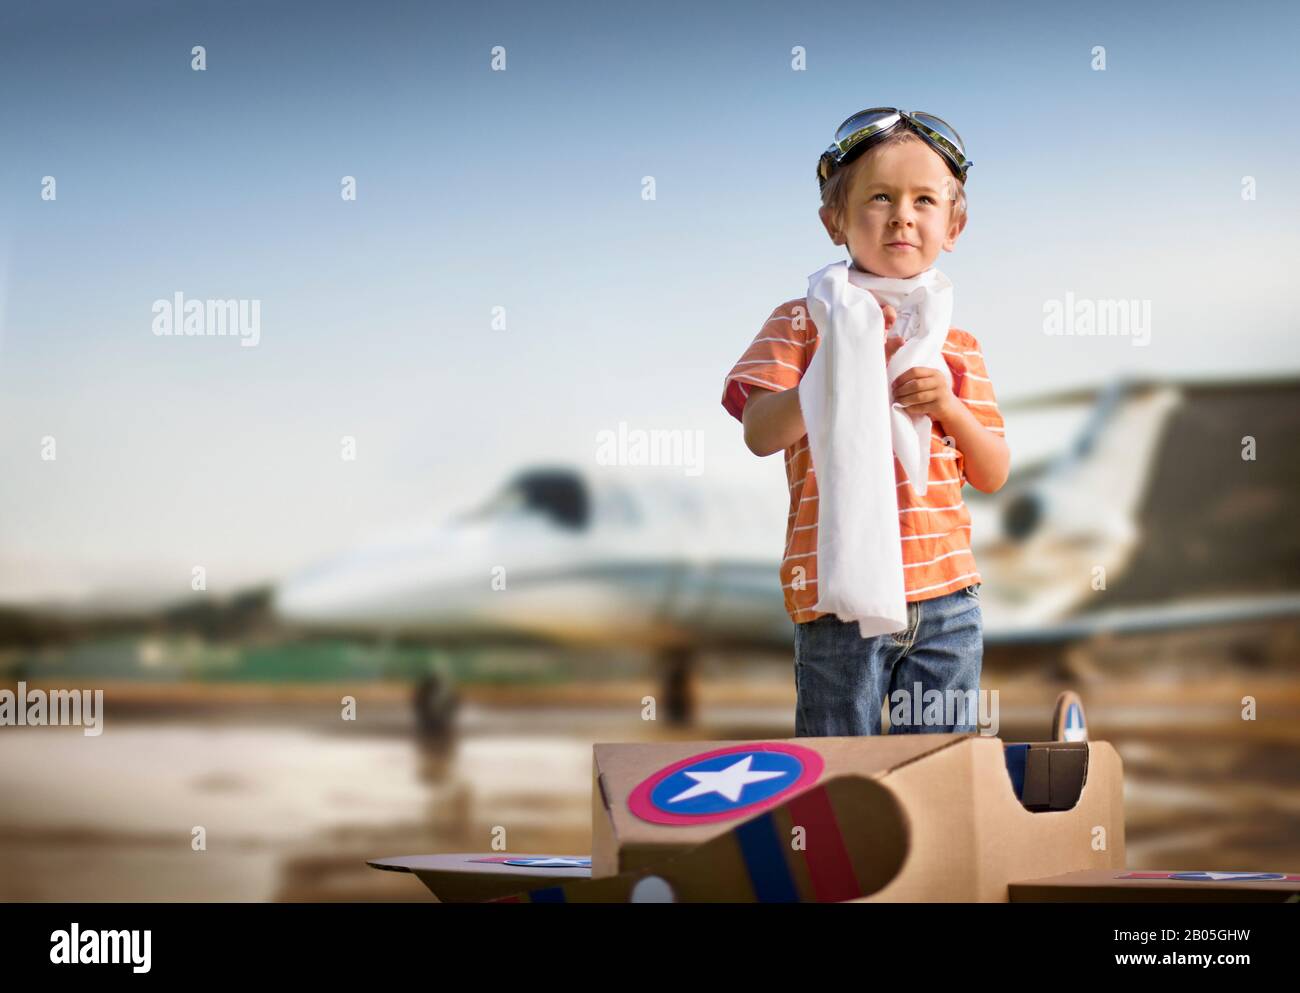 Der junge Junge in seinem Pappkartonflugzeug träumt davon, eines Tages ein echtes Flugzeug zu fliegen. Stockfoto